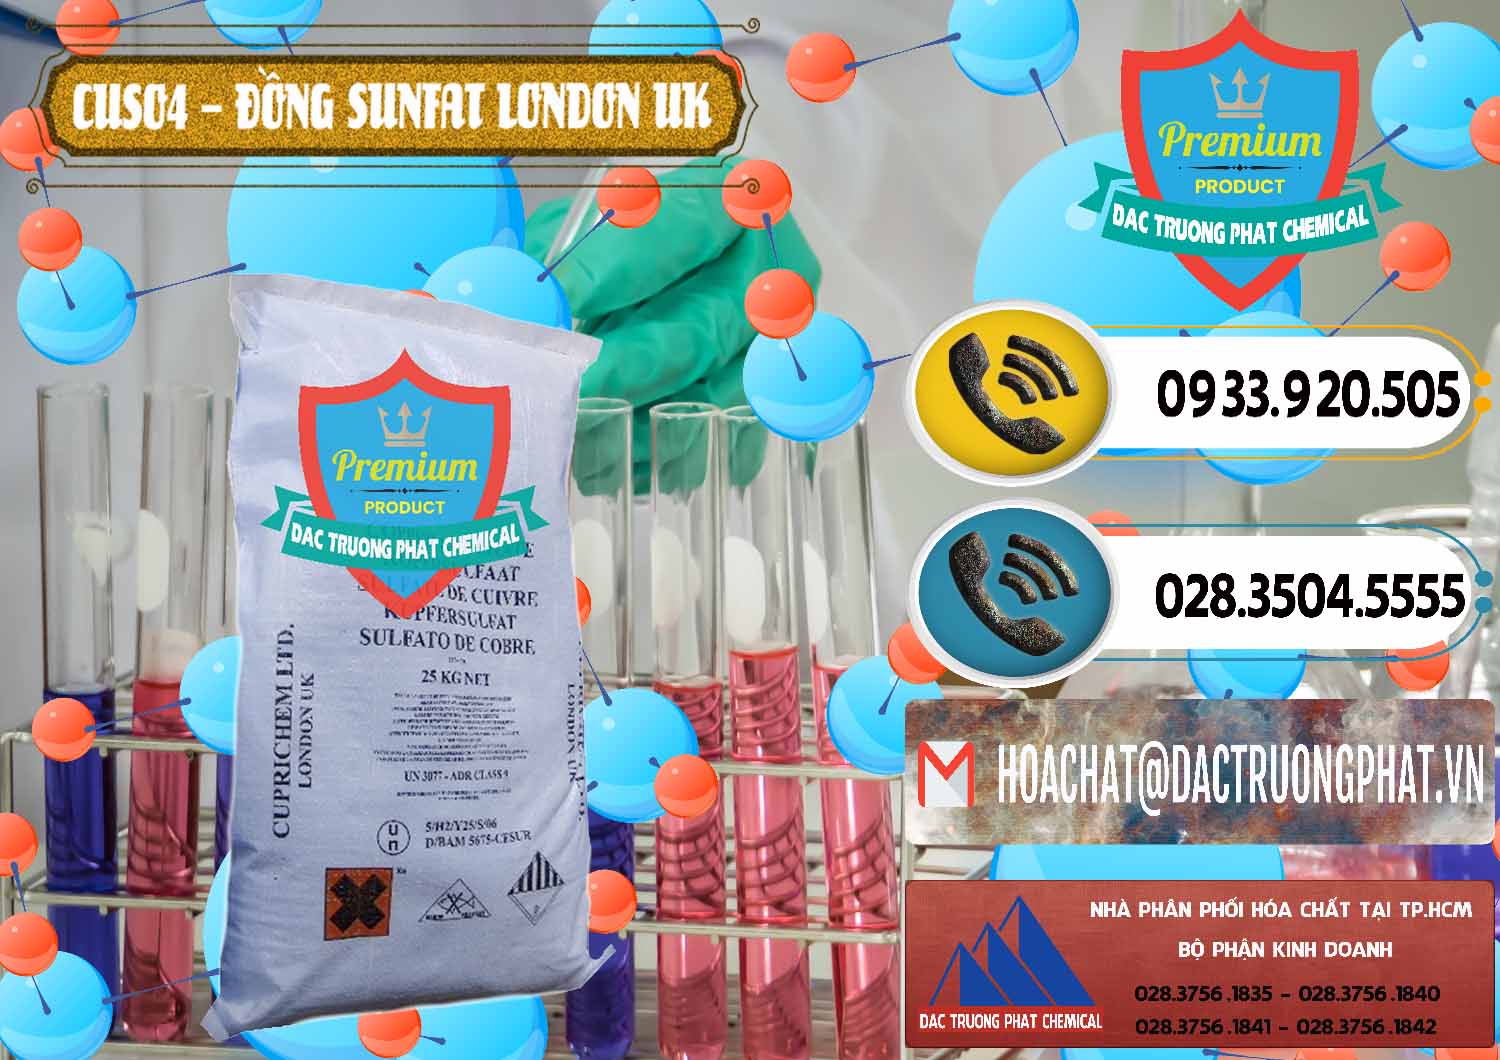 Nơi chuyên cung cấp và bán CuSO4 – Đồng Sunfat Anh Uk Kingdoms - 0478 - Nhà cung cấp & phân phối hóa chất tại TP.HCM - hoachatdetnhuom.vn